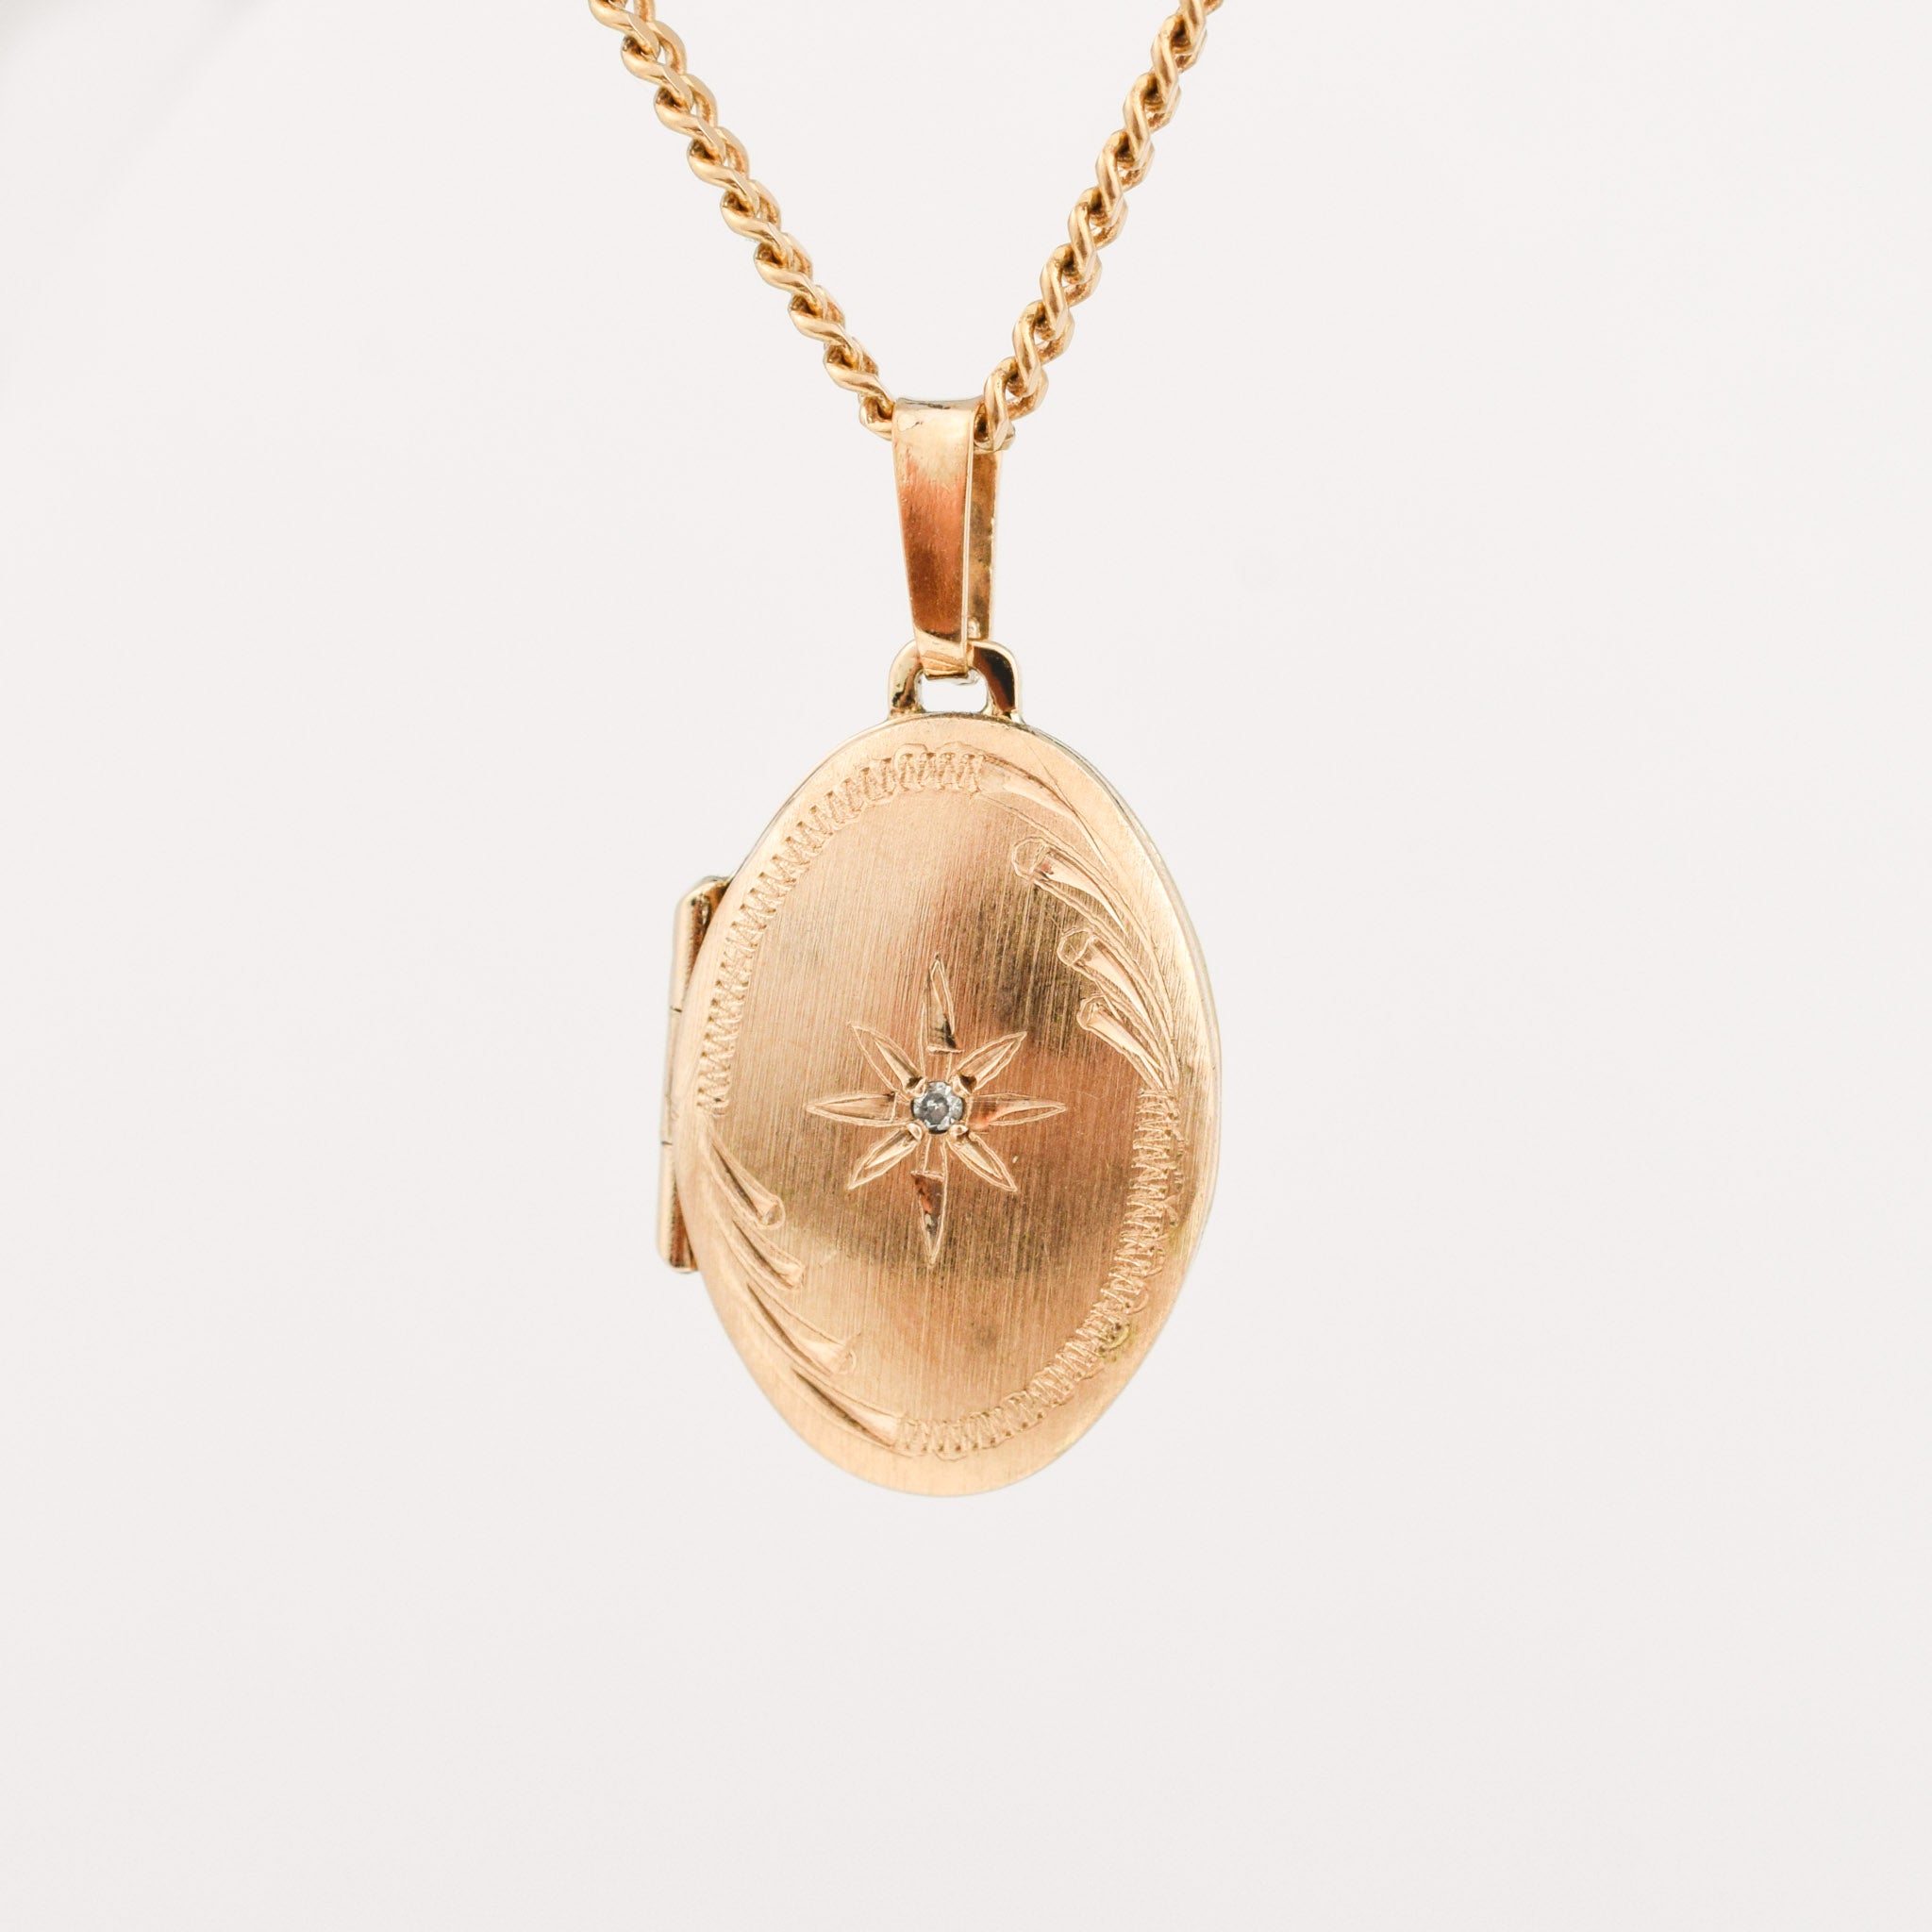 vintage gold brushed locket pendant, folklor vintage jewelry canada